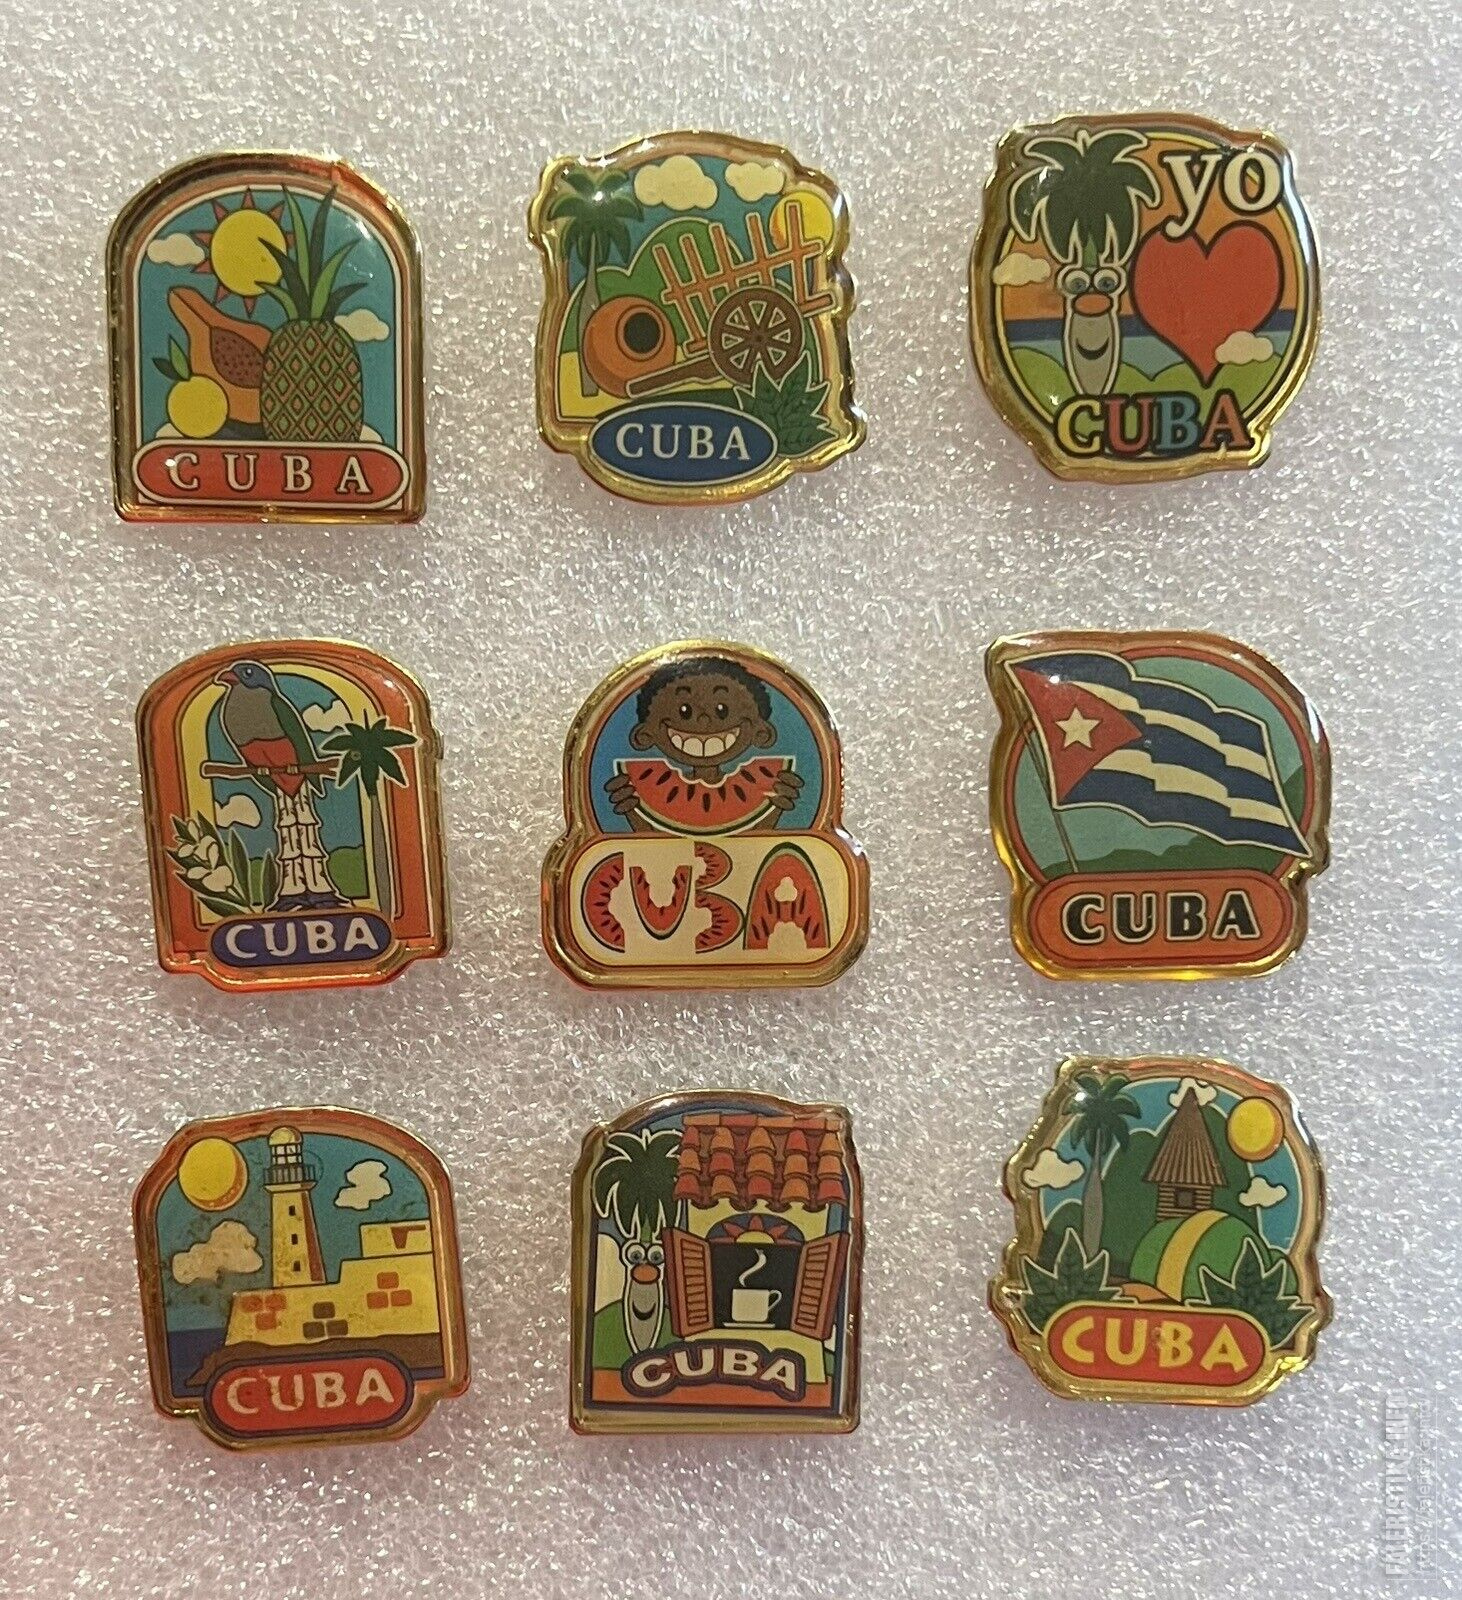 00_Cuba-6.jpg